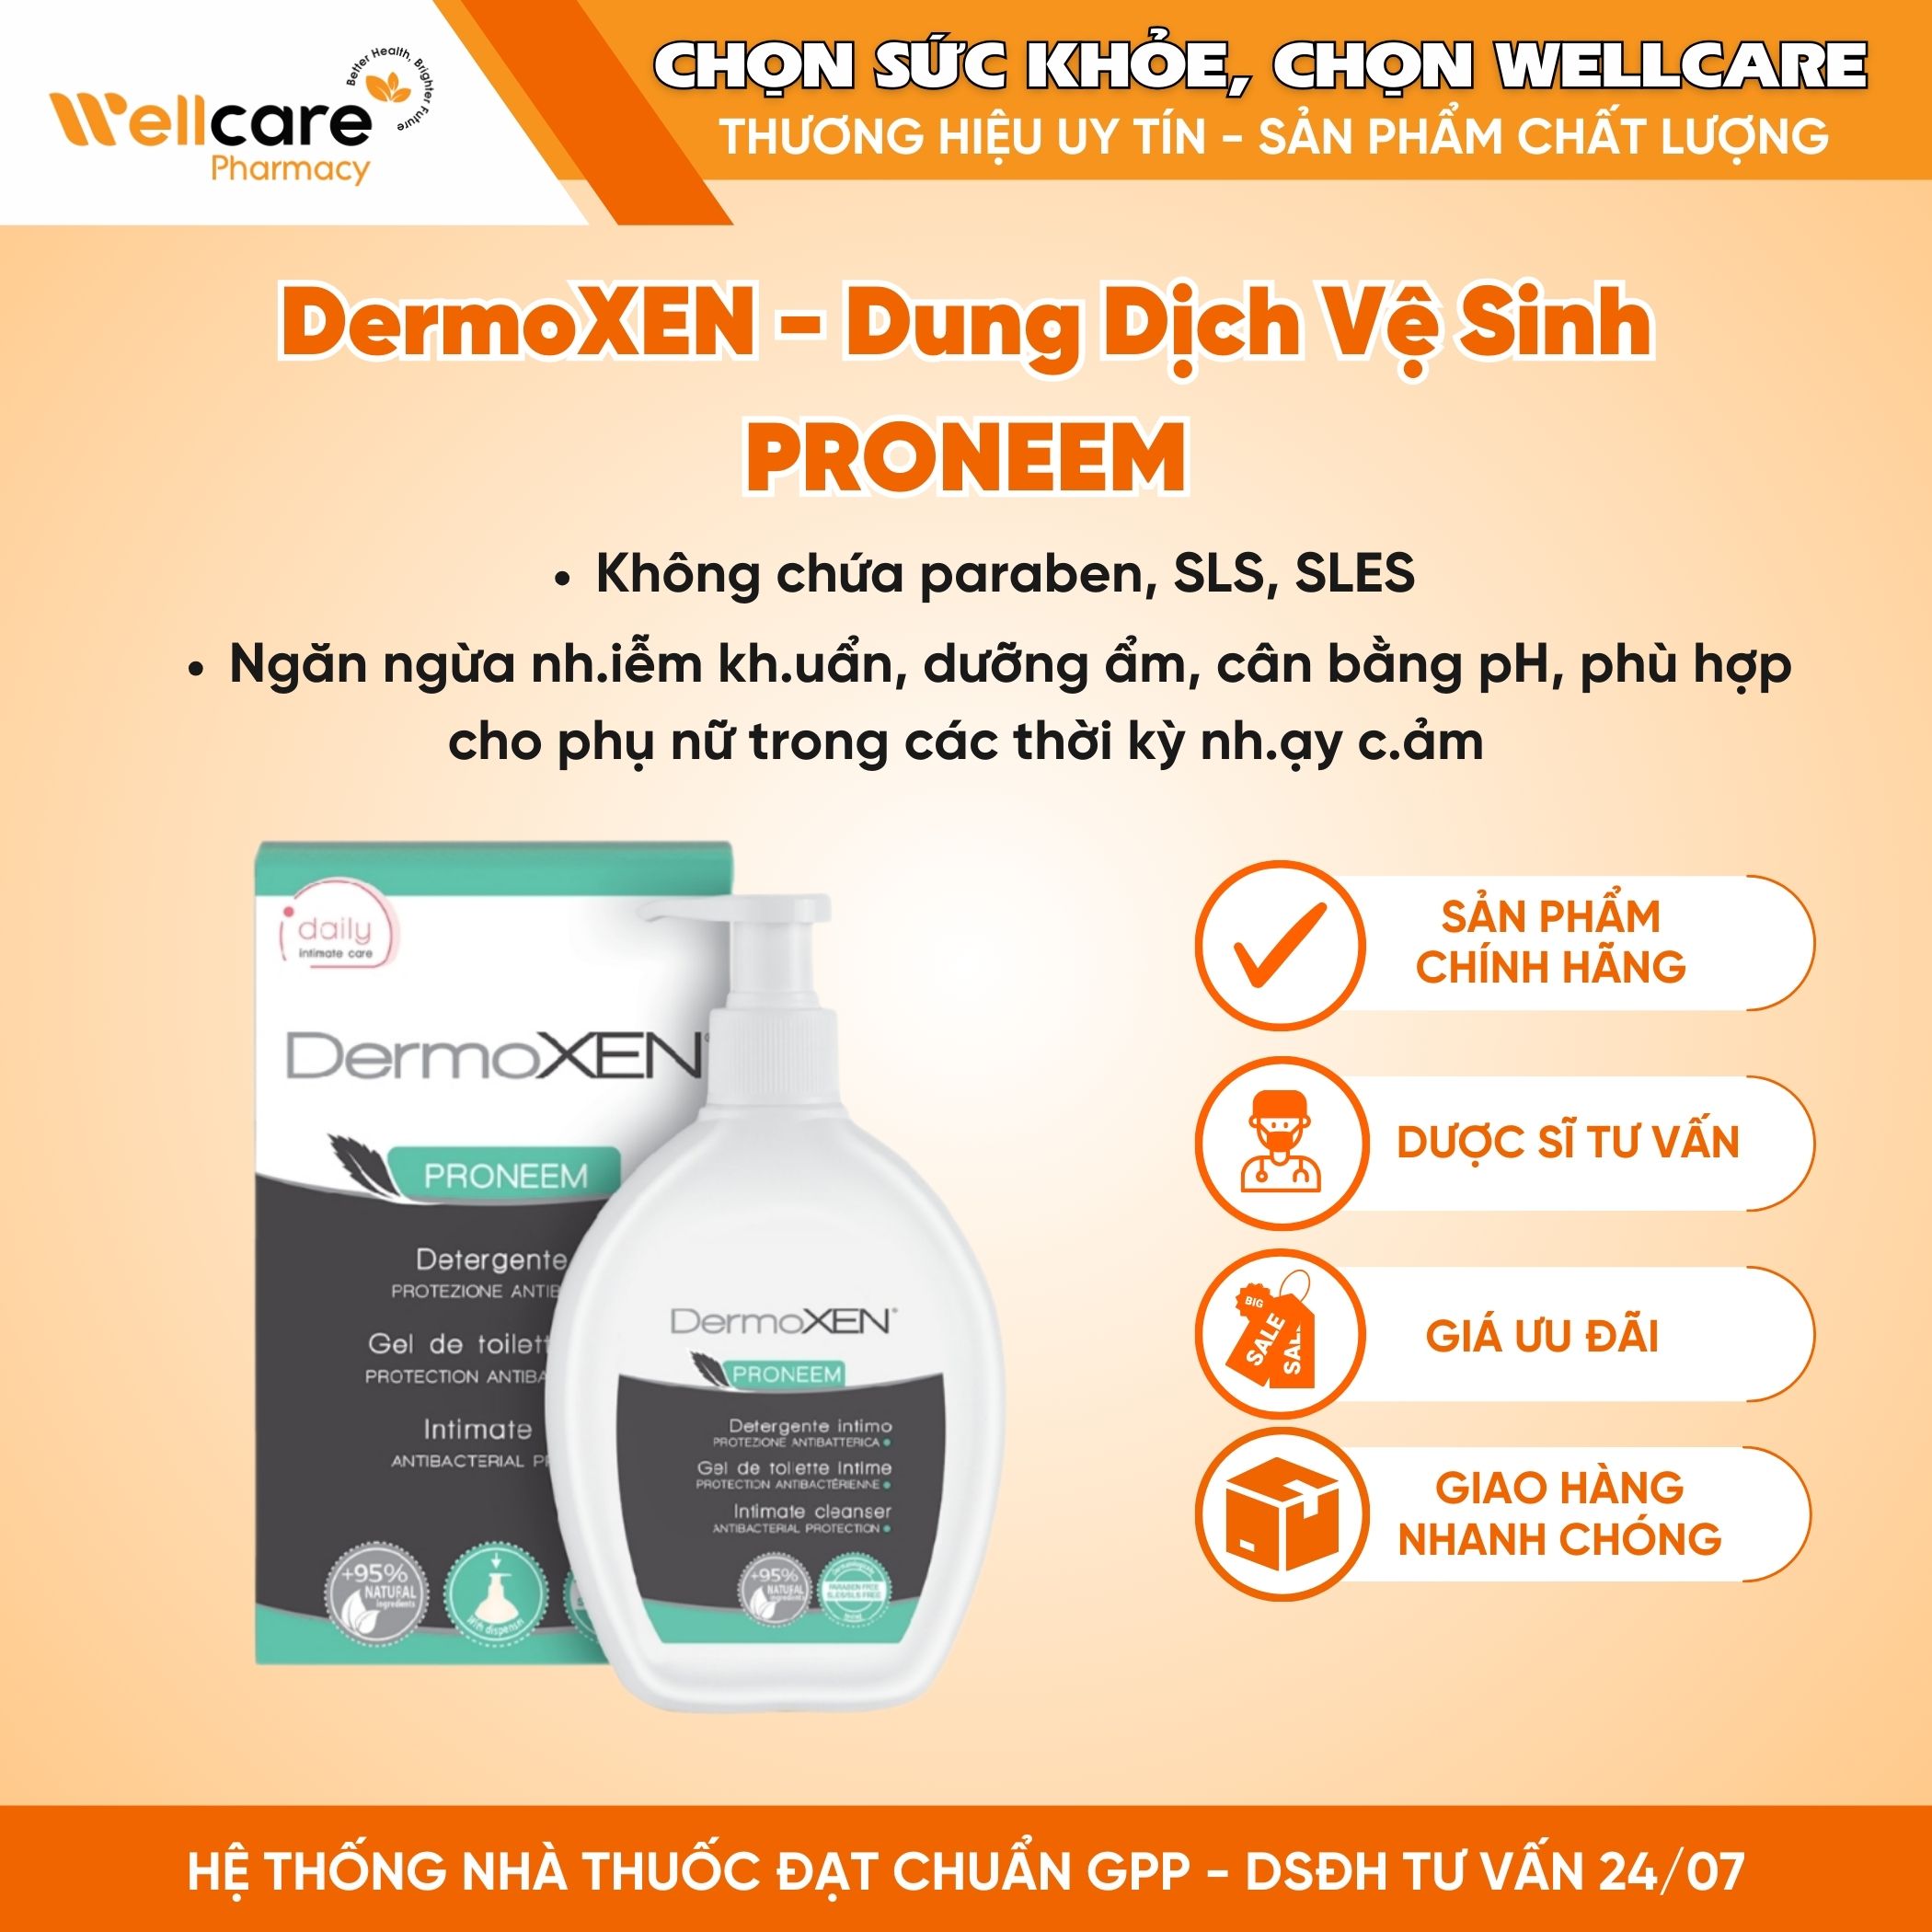 DermoXEN PRONEEM – Dung dịch vệ sinh hằng ngày ngăn ngừa nhiễm khuẩn dành cho phụ nữ (Chai 200ml)